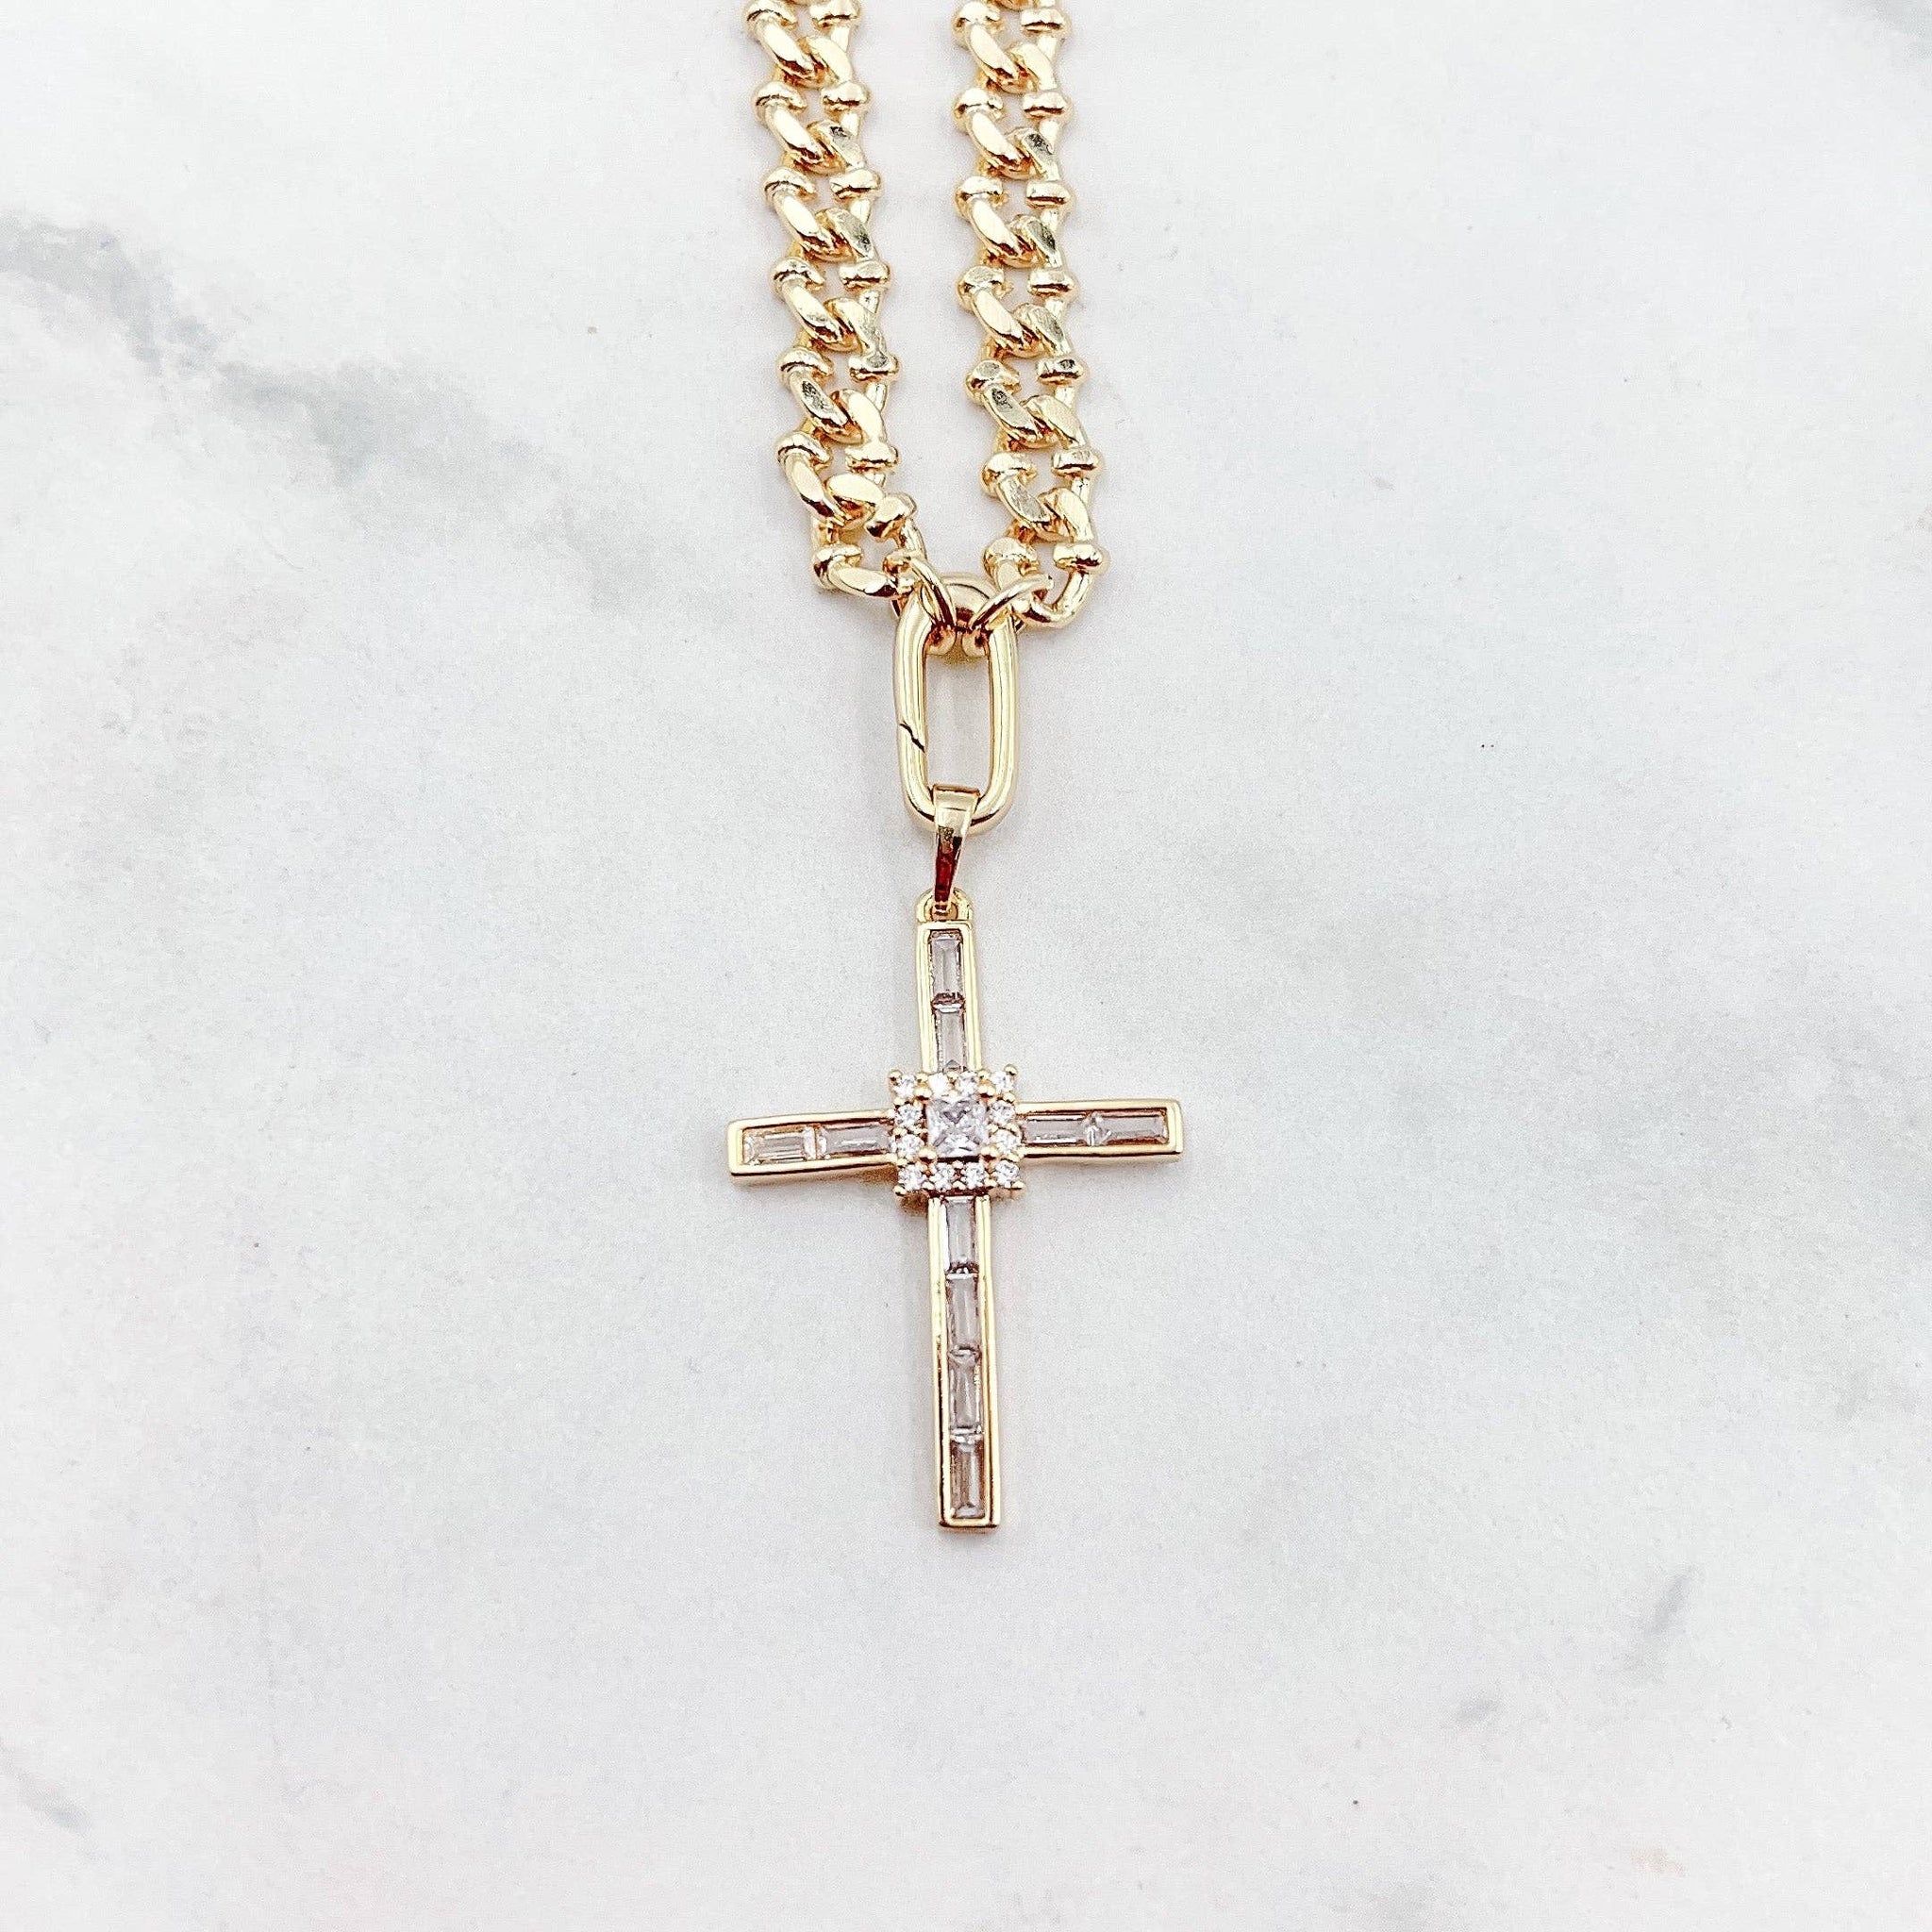 TJ Elegant Cross Gold Necklace